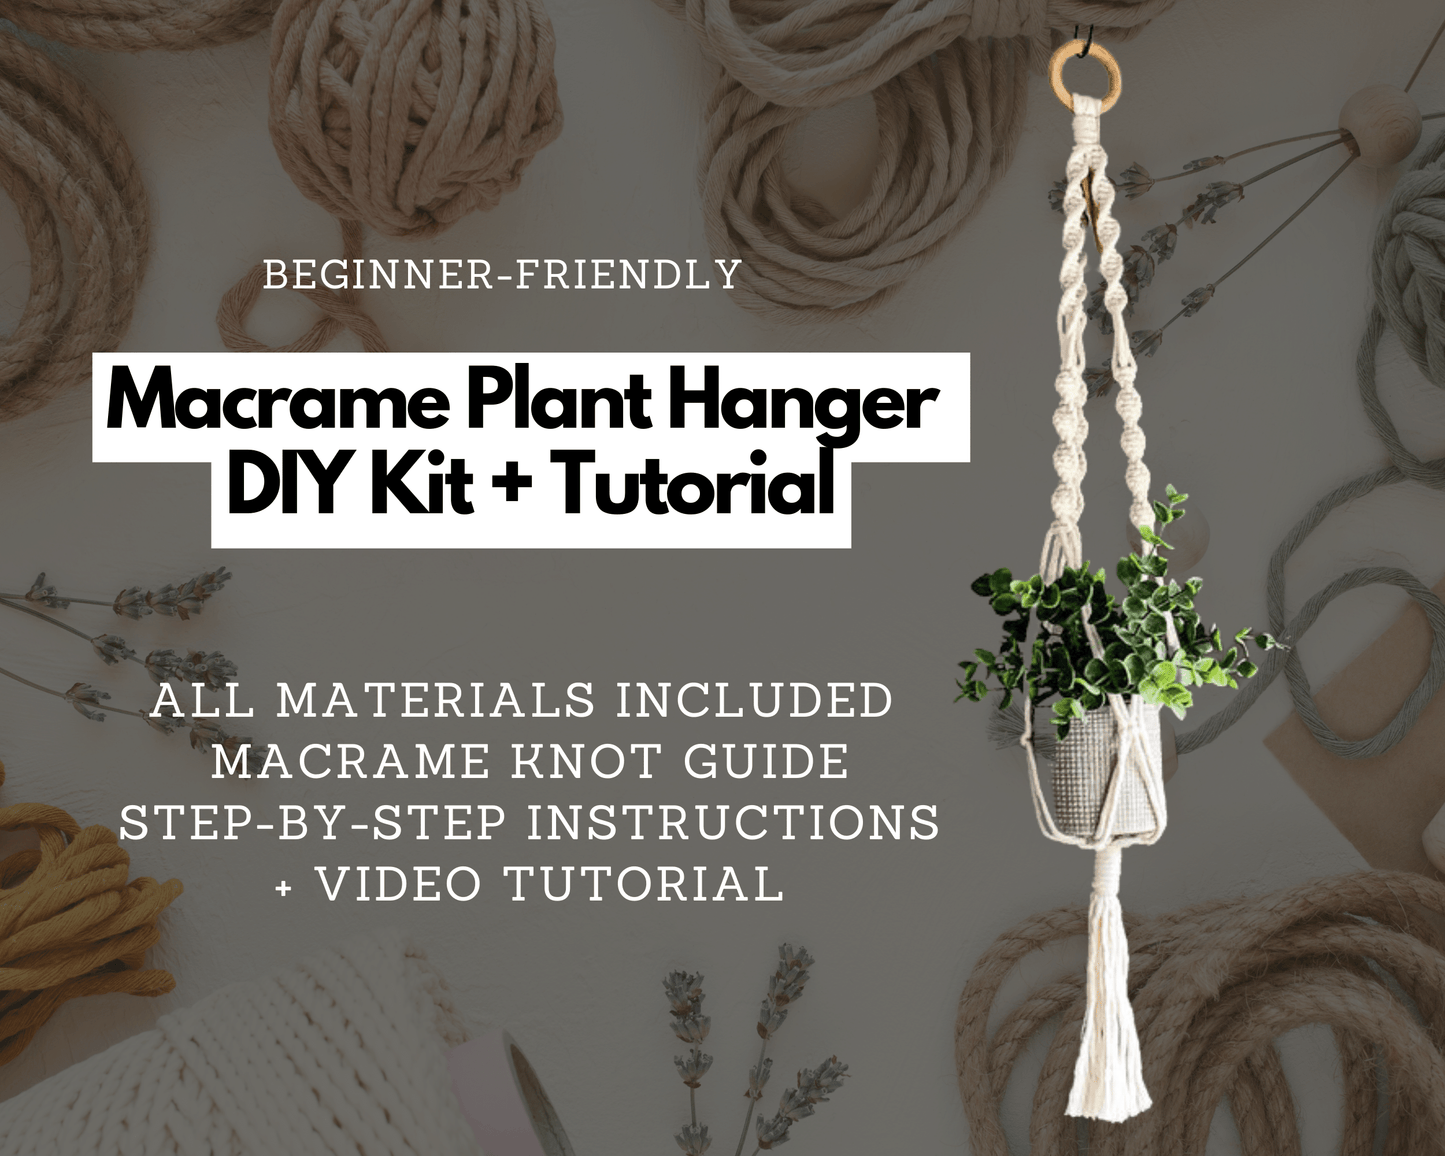 Macrame Plant Hanger DIY Kit with Pattern